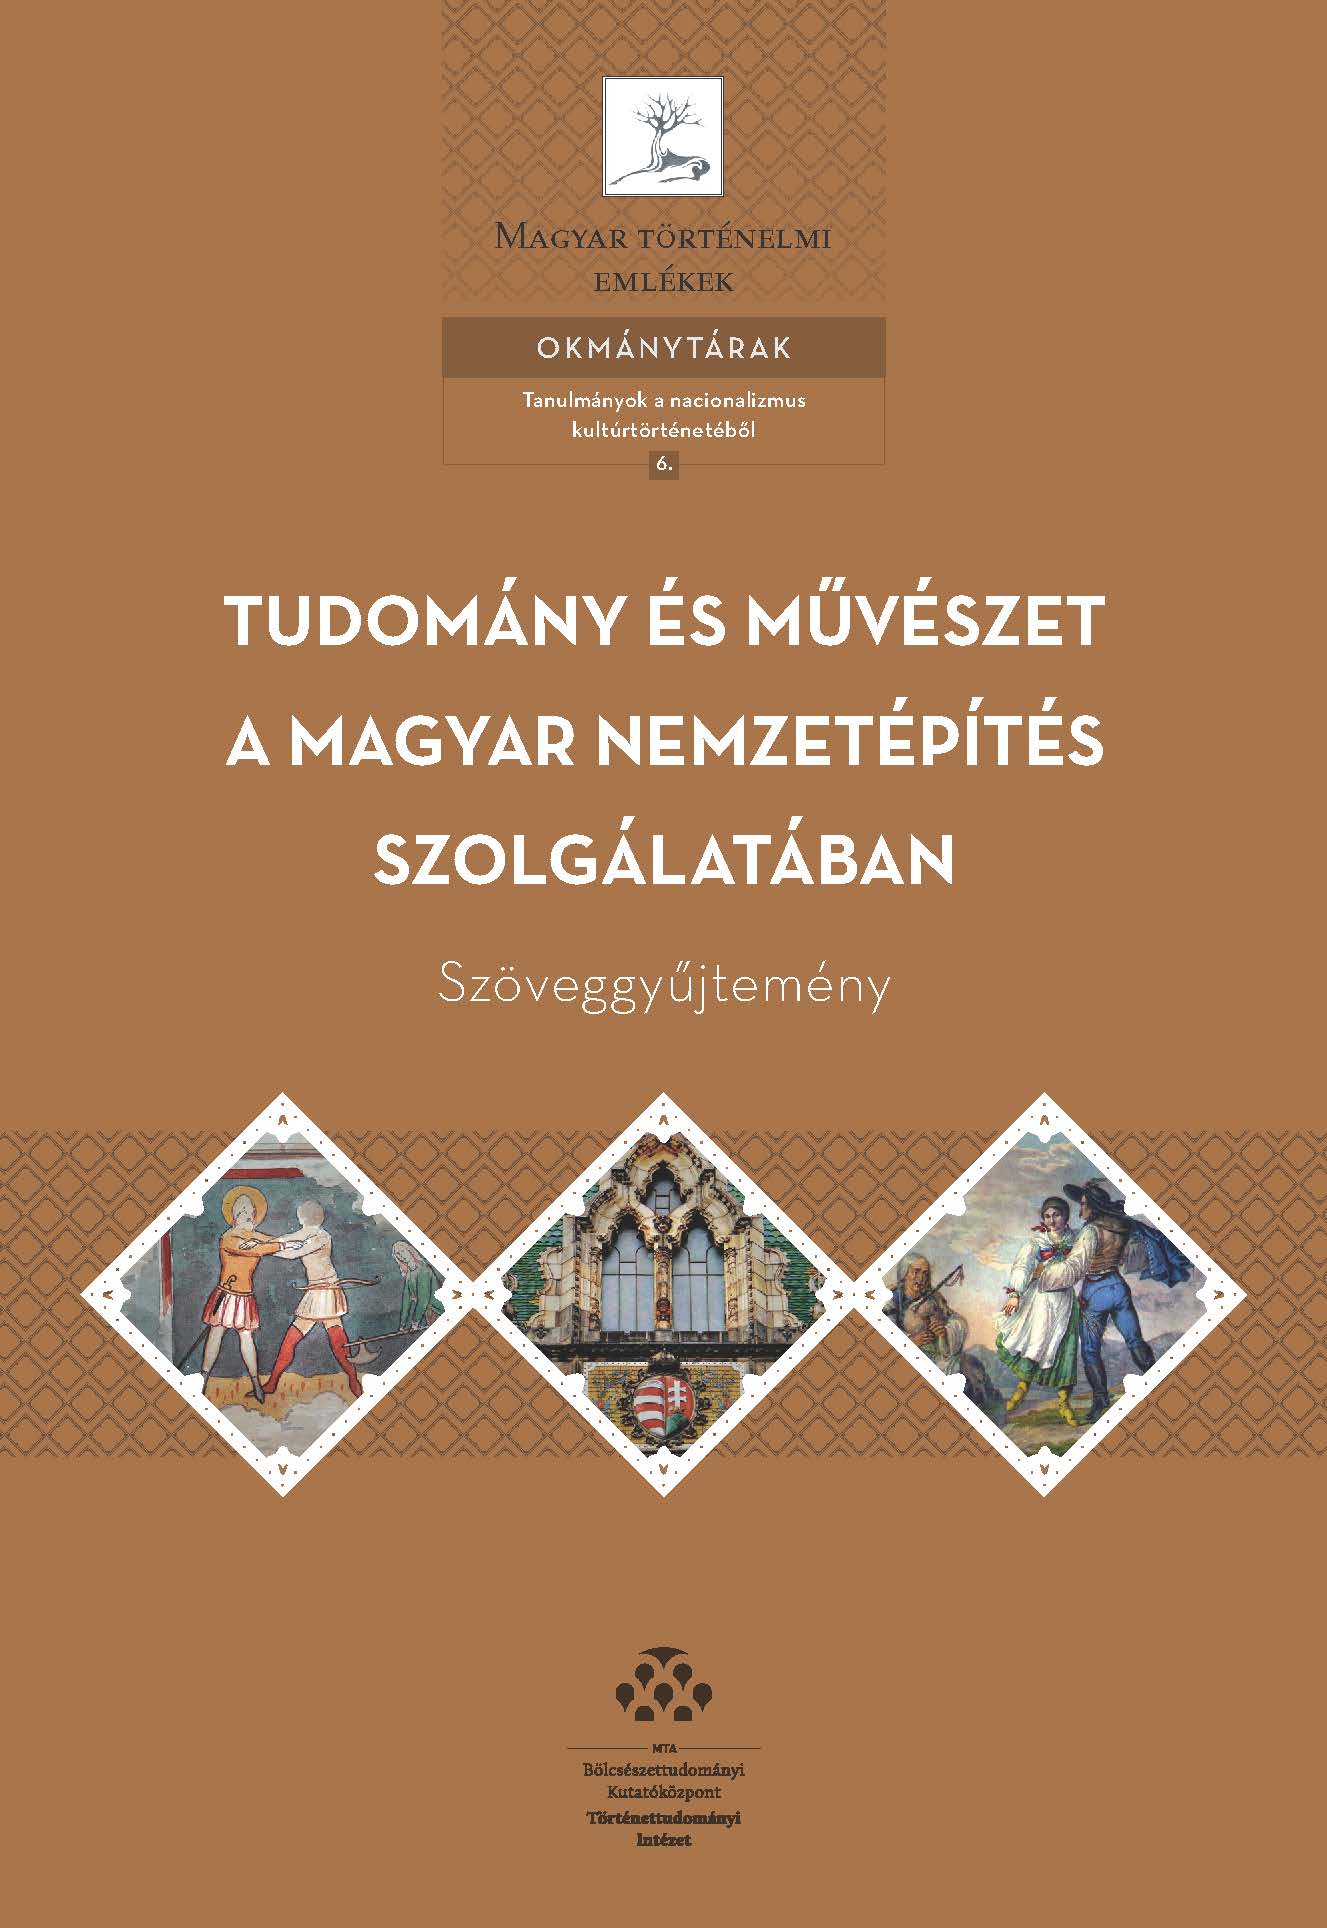 Tudomány és művészet a magyar nemzetépítés szolgálatában címmel új kötet jelent meg